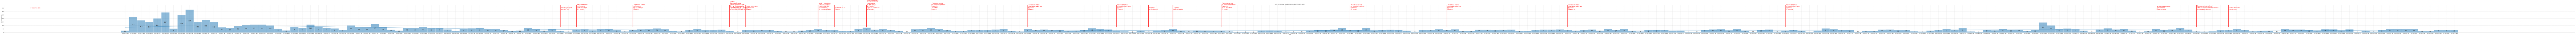 Гистограмма, показывающая количество предложений недвижимости Севастополя по дням c 2022-01-01 по 2023-05-31